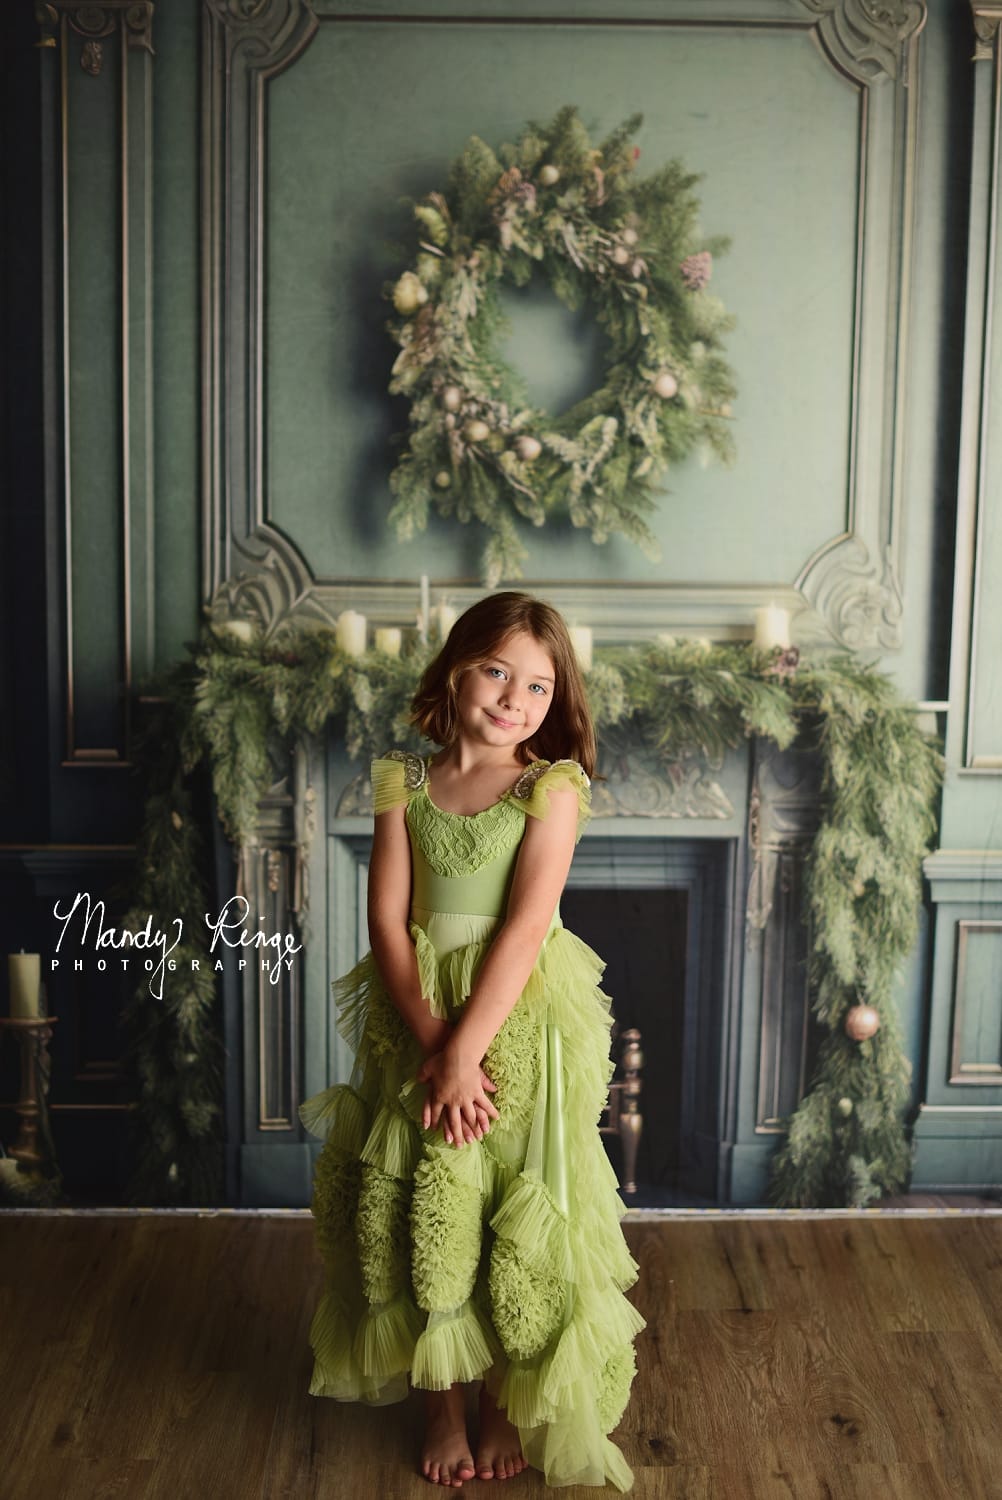 Kate Eleganter Kamin mit Weihnachten begrüntem Hintergrund von Mandy Ringe Fotograf